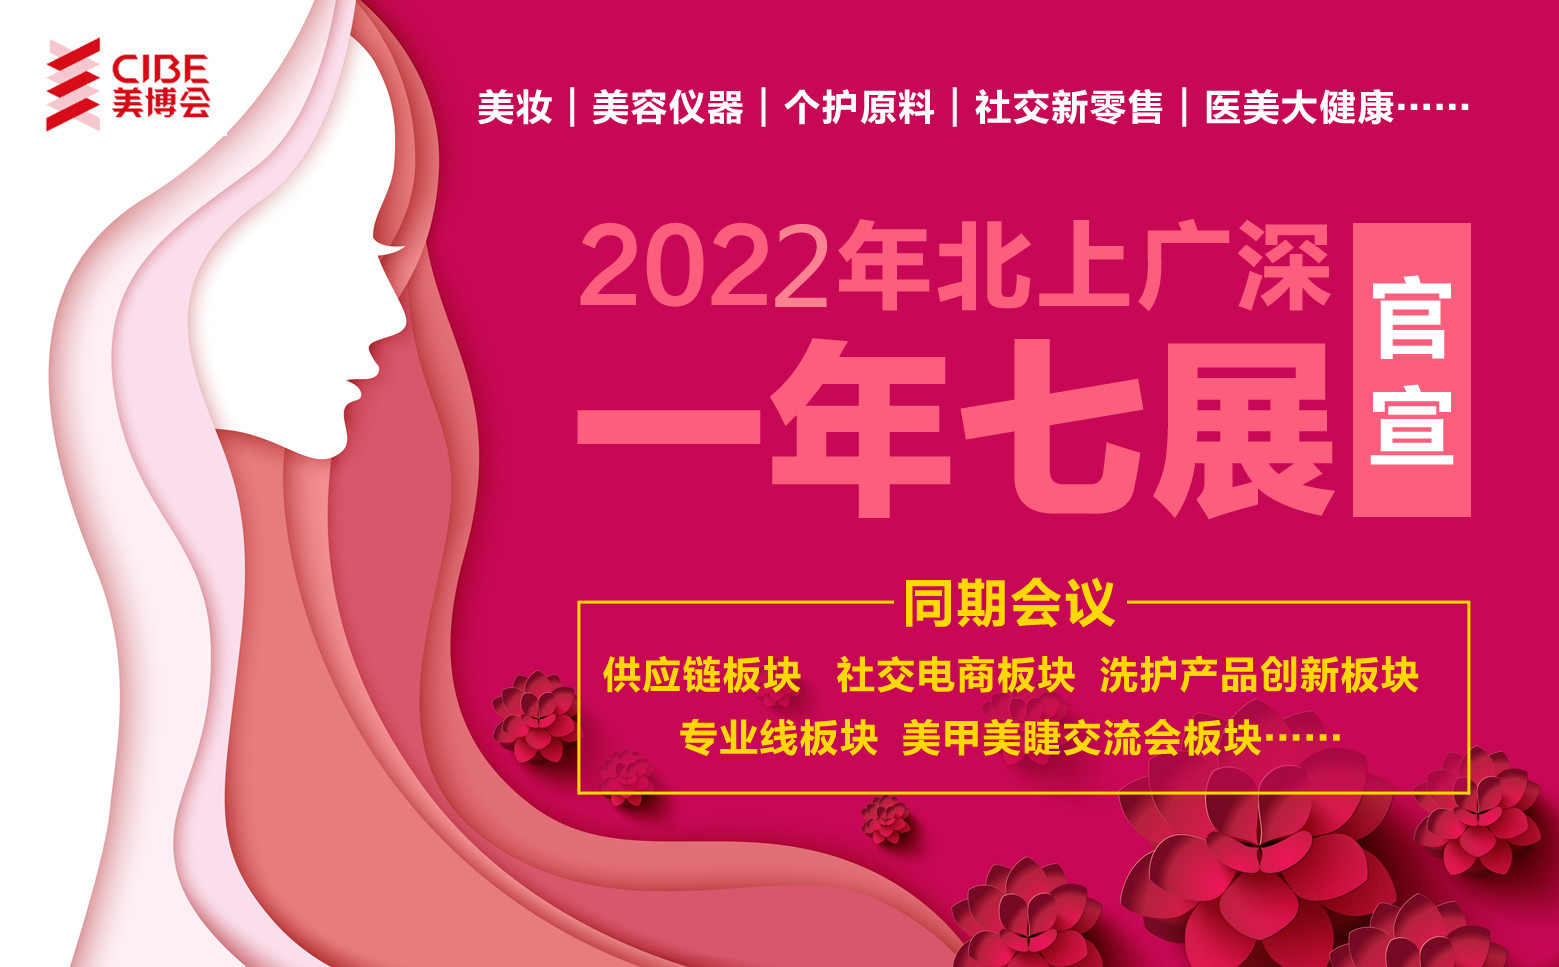 2022年CIBE广州美博会暨第59届产后修复展